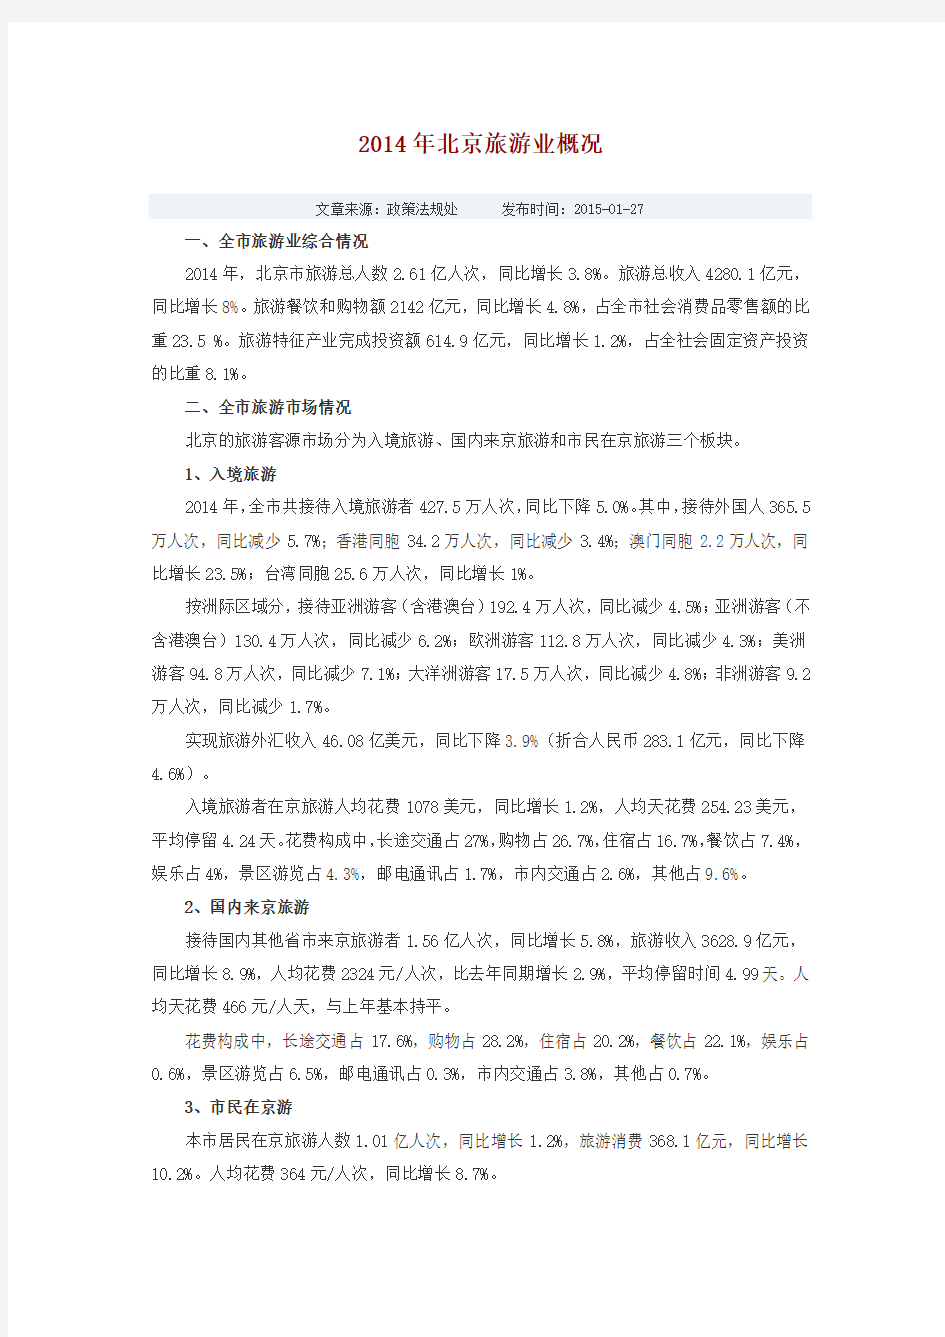 2014年北京旅游业概况